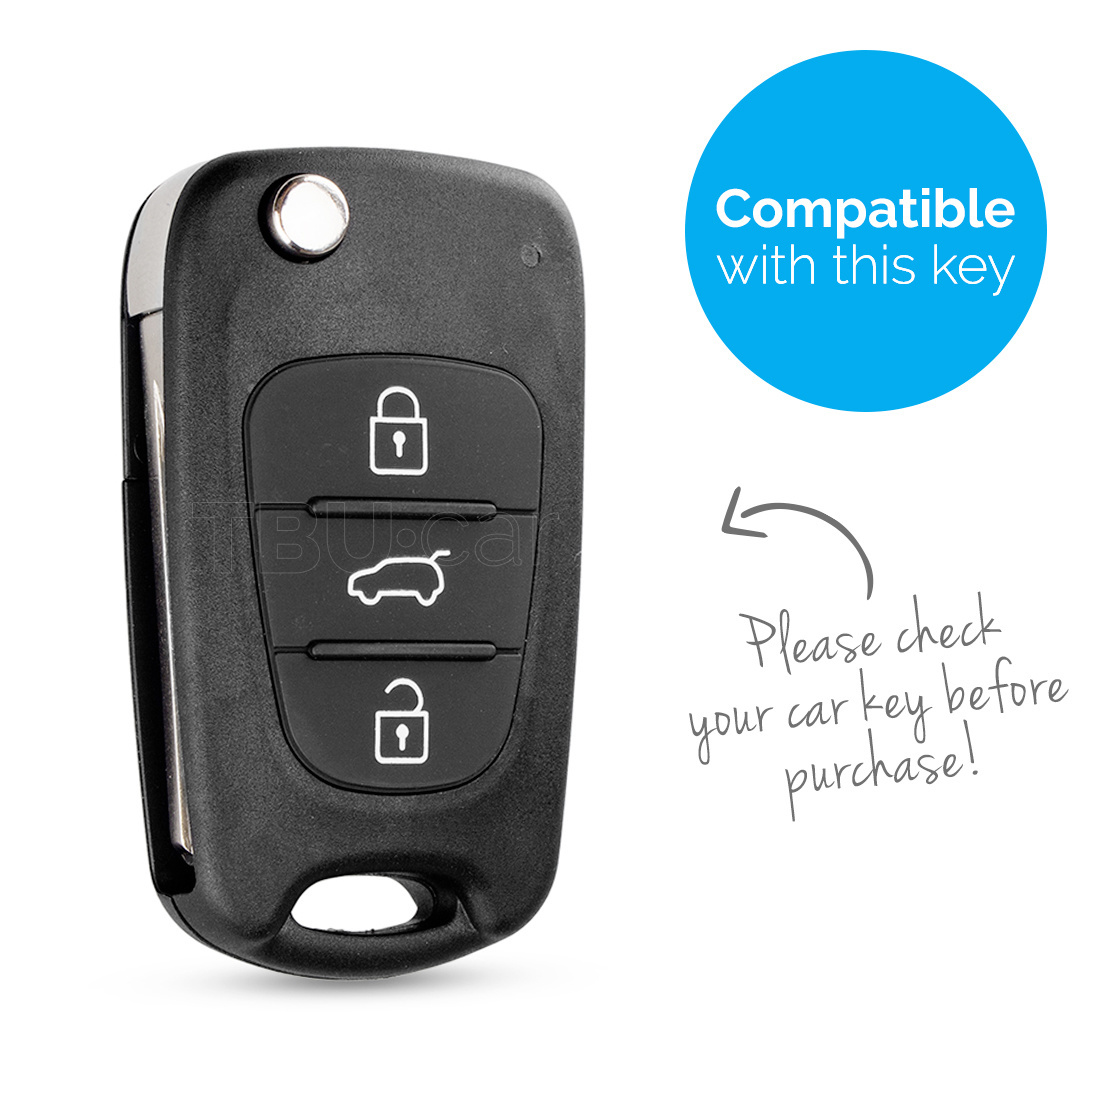 TBU car TBU car Sleutel cover compatibel met Kia - Silicone sleutelhoesje - beschermhoesje autosleutel - Lime groen